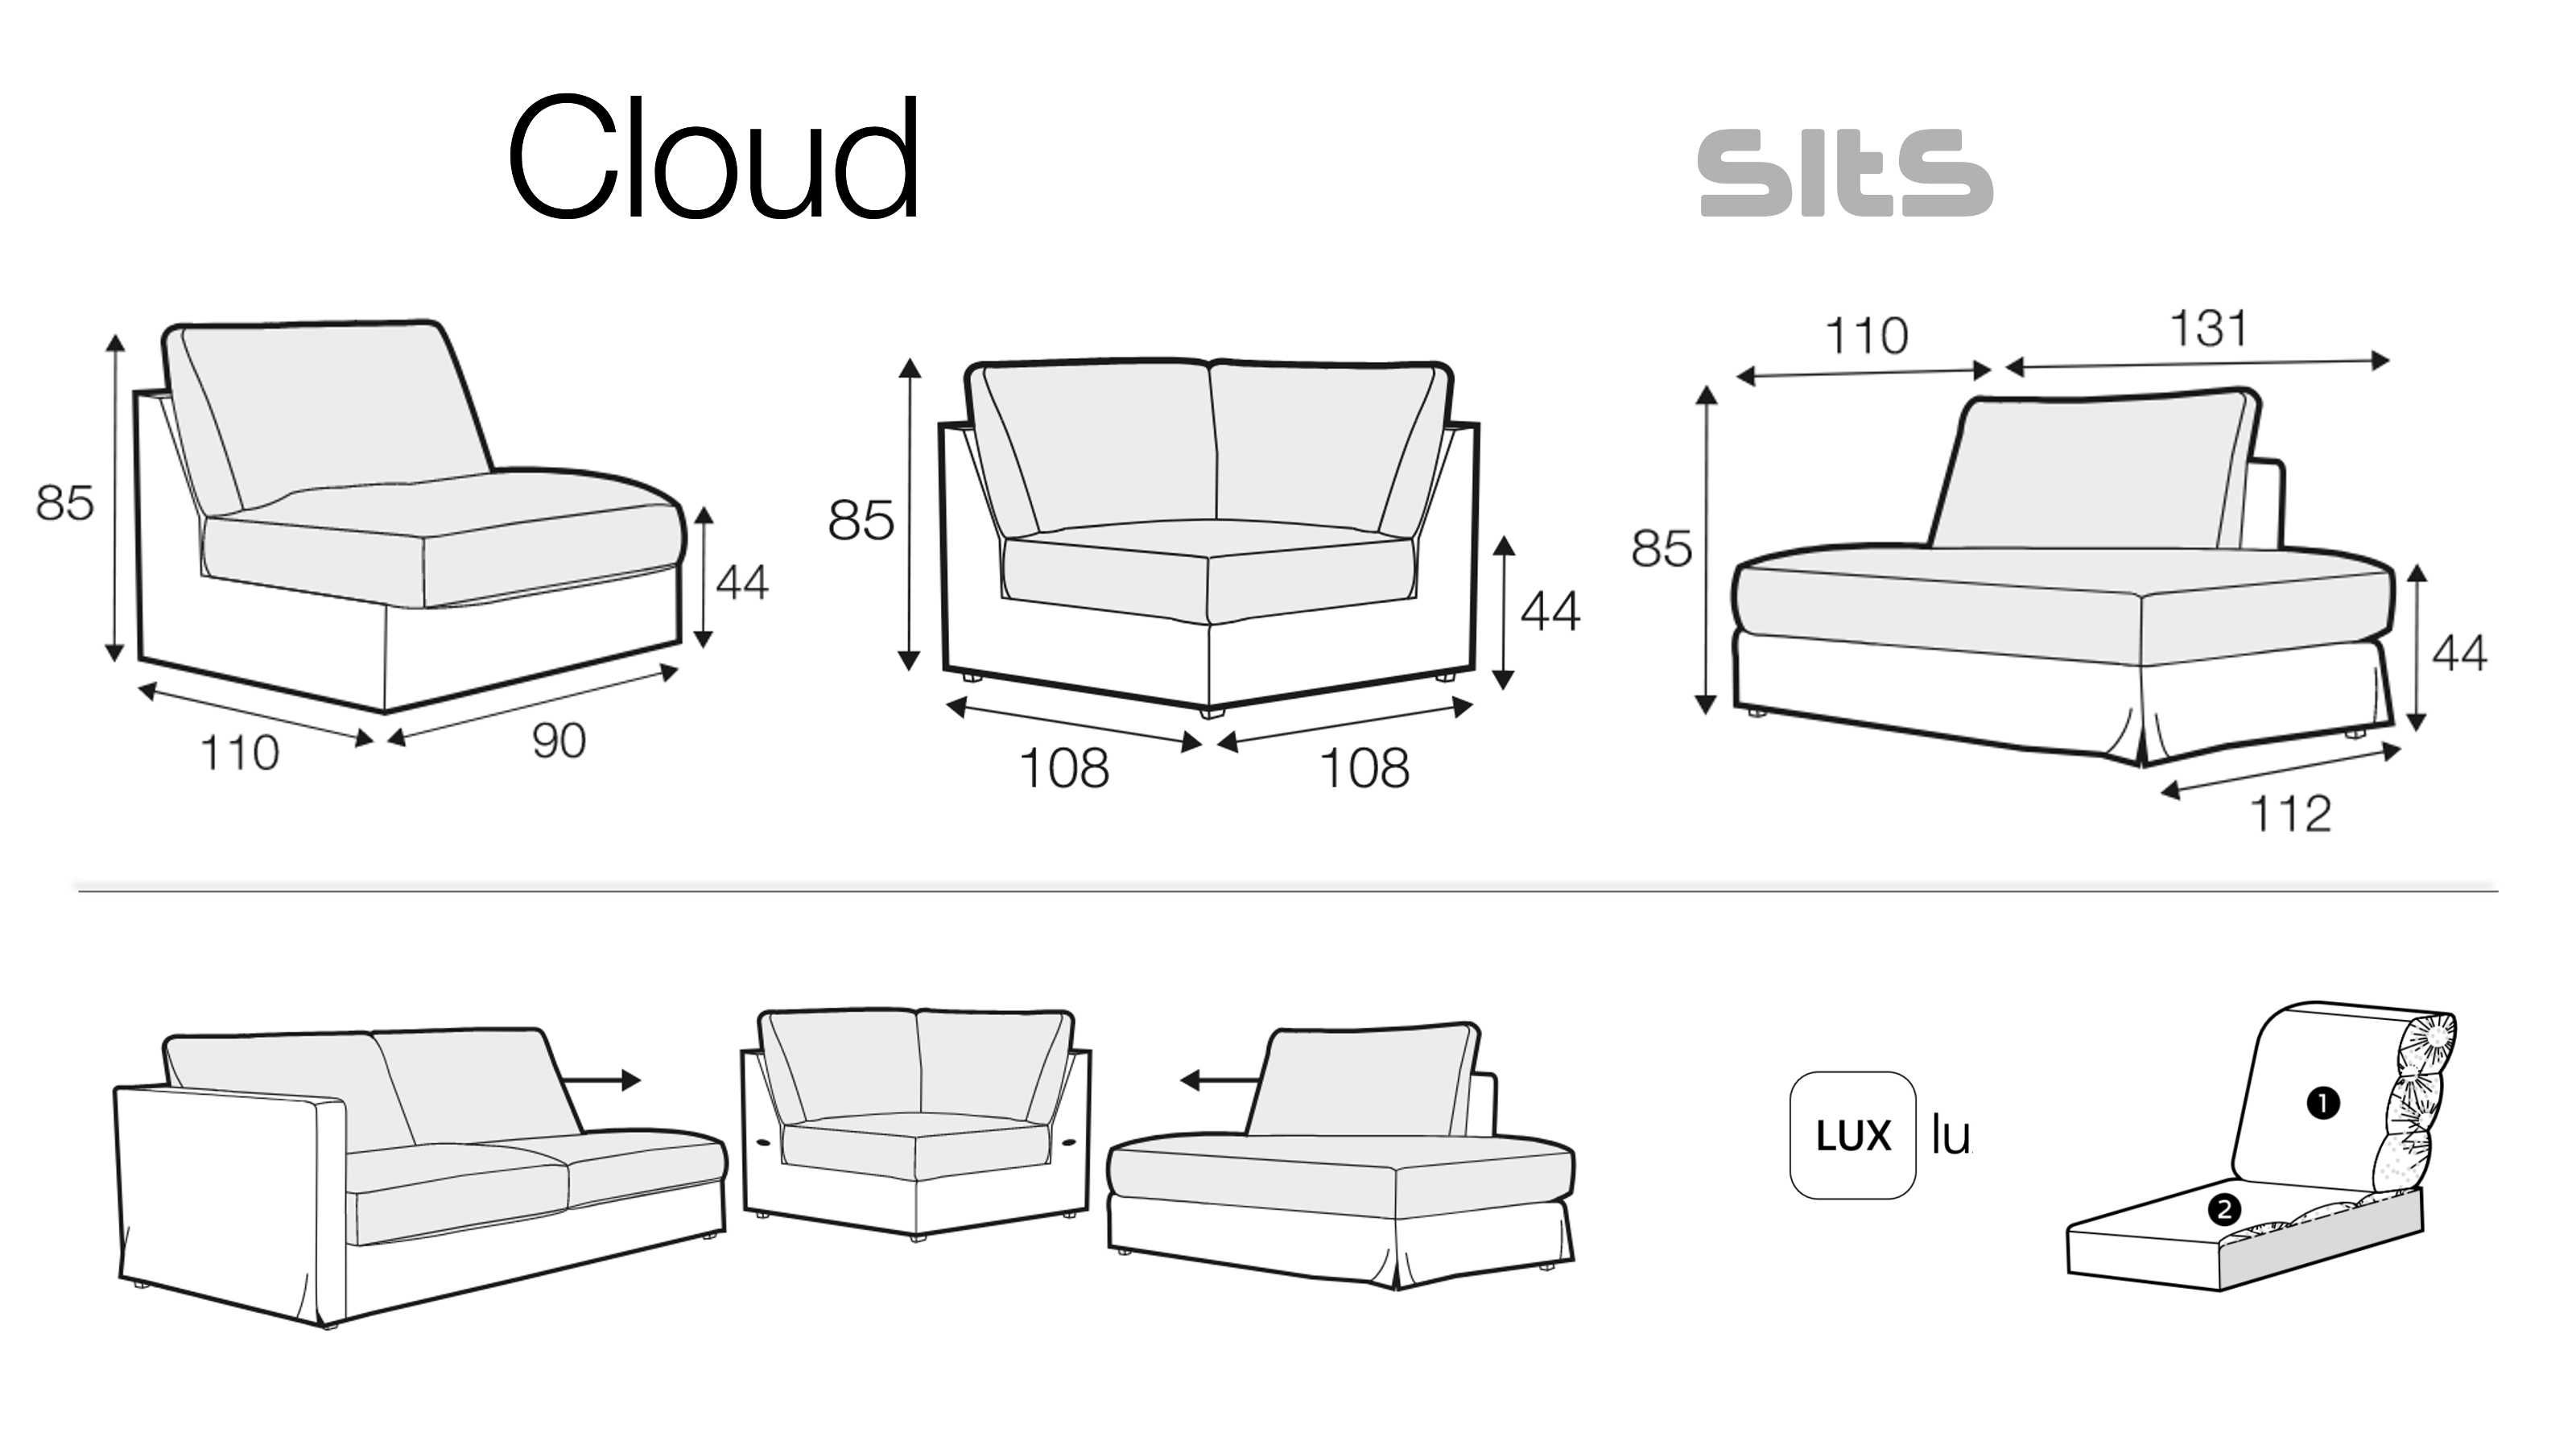 Sofa narożnikowa renomowanej Europejskiej marki Sits, model Cloud